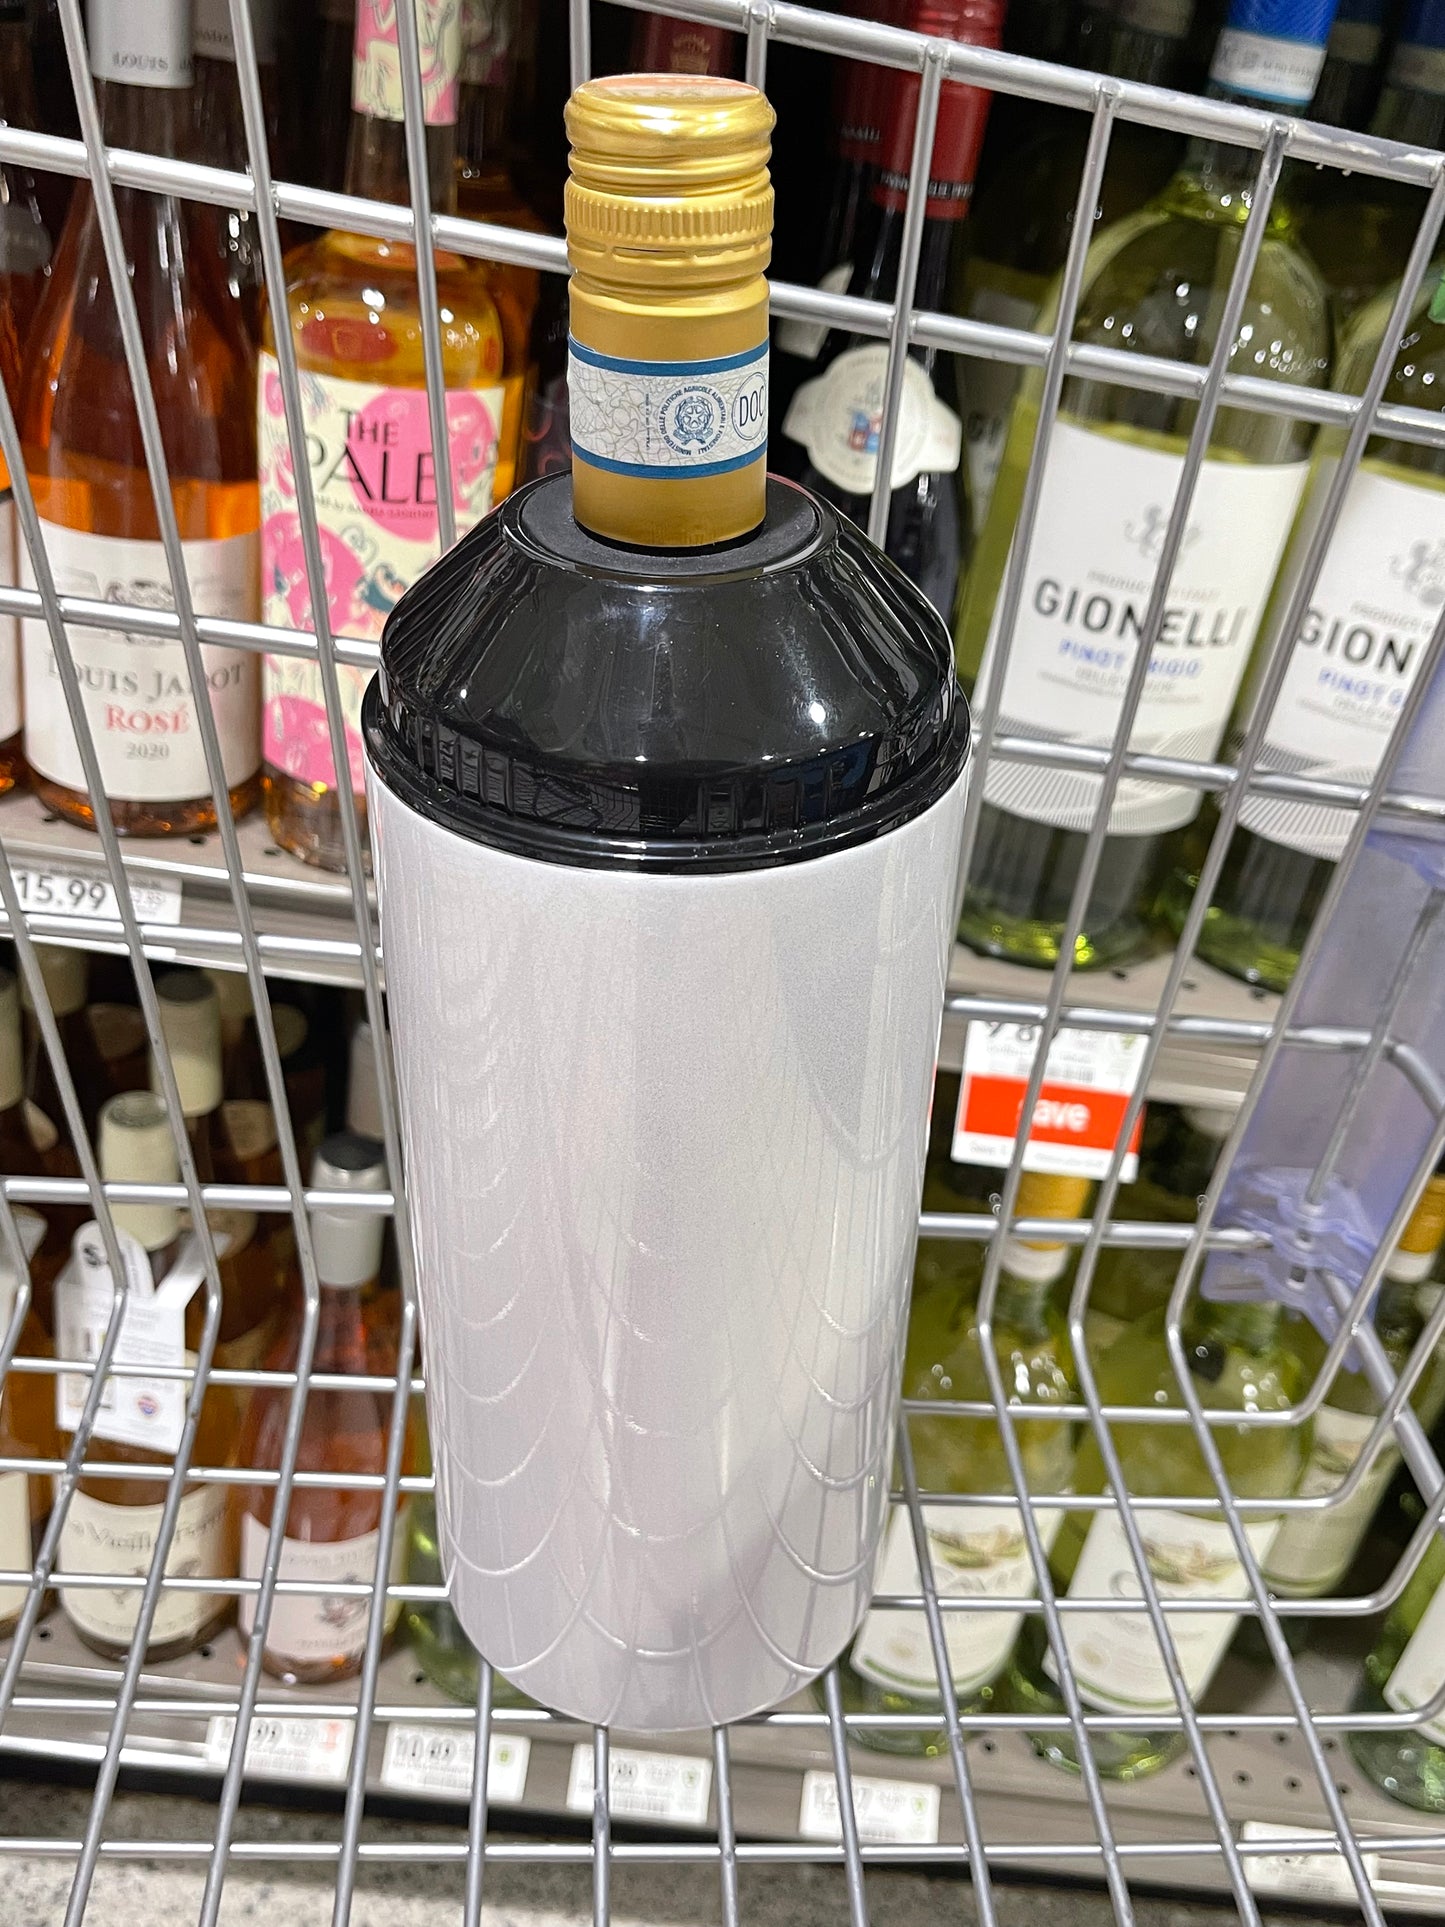 Wine Bottle Holder - White Shimmer Sublimation – Ava Jane's Blanks